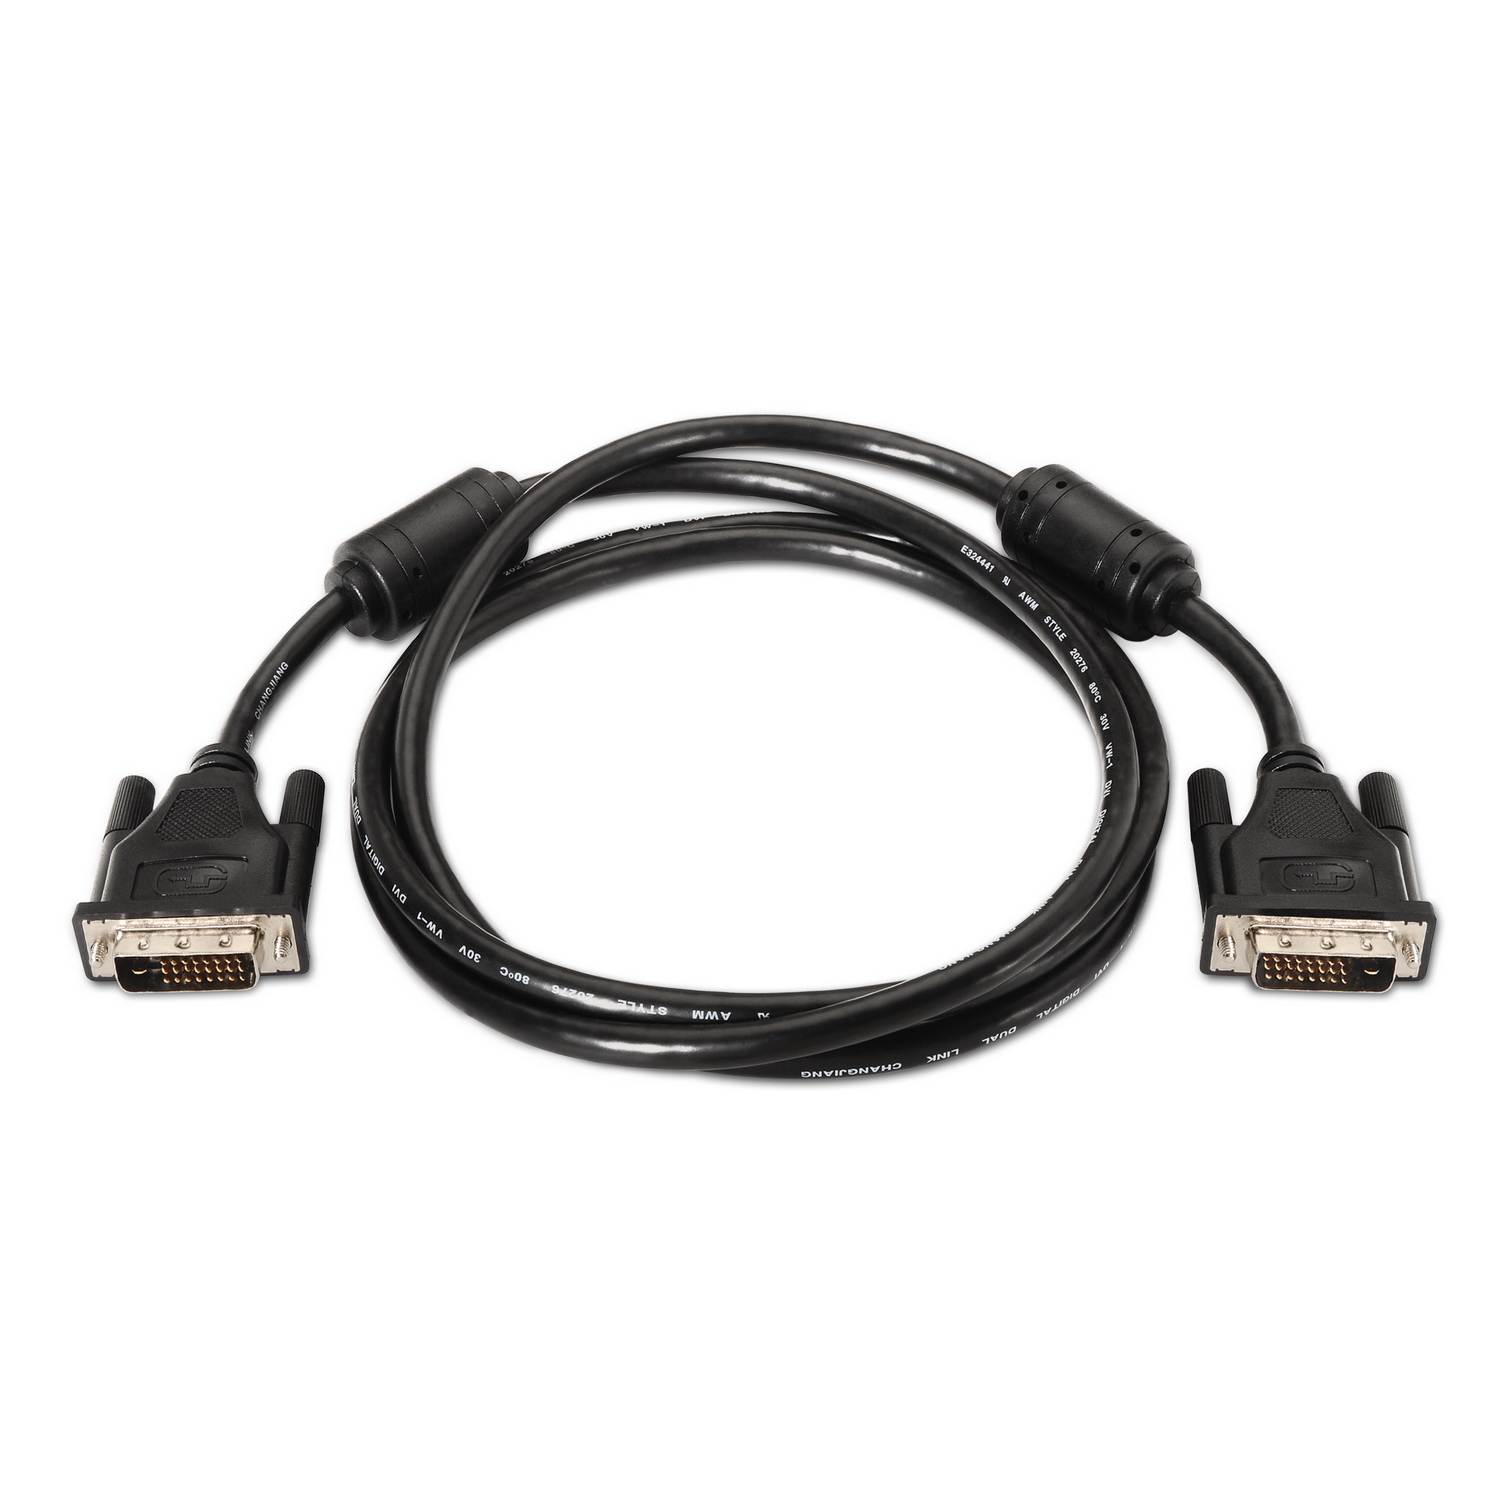 Aisens Câble DVI Dual Link 24+1 avec Ferrite - DVI-D Male vers DVI-D Male - 1.8m - (2560 x 1600) - Couleur Noir